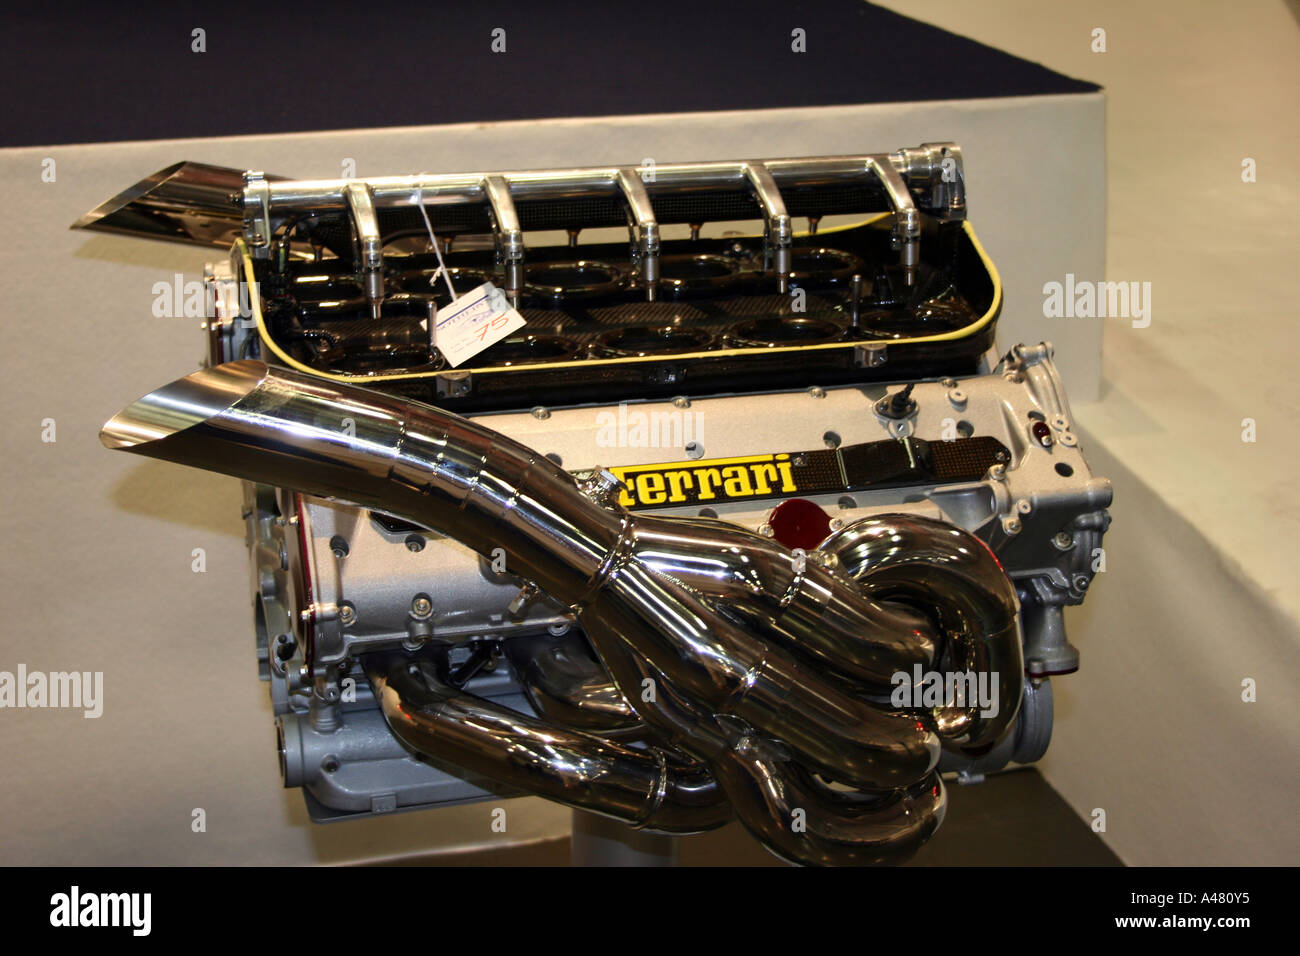 Ferrari V10 moteur de Formule 1. Banque D'Images